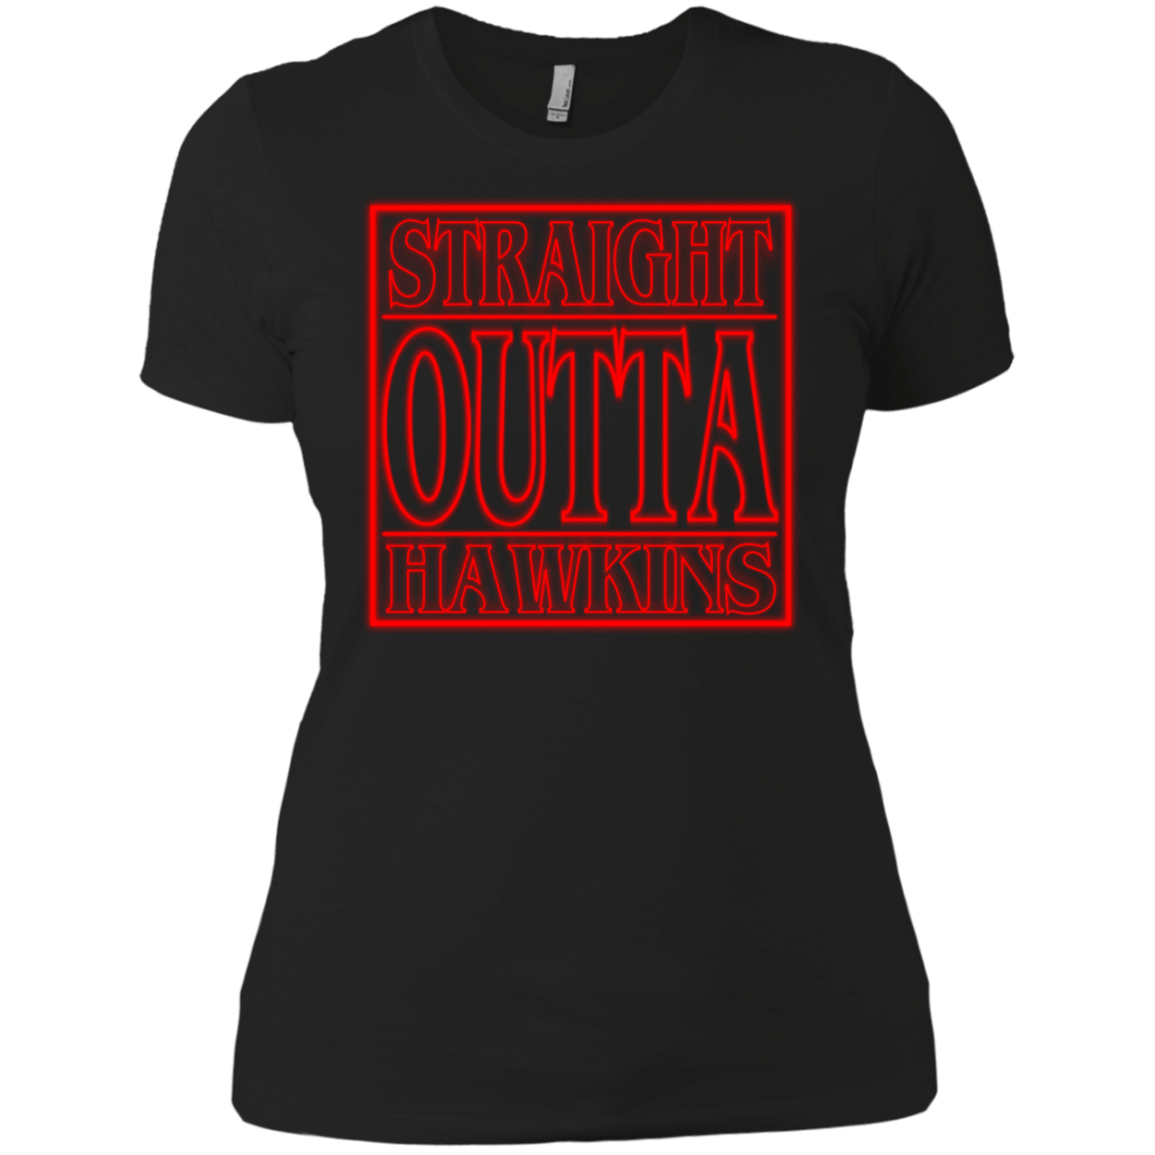 T-Shirts Black / X-Small Outta Hawkins Women's Premium T-Shirt